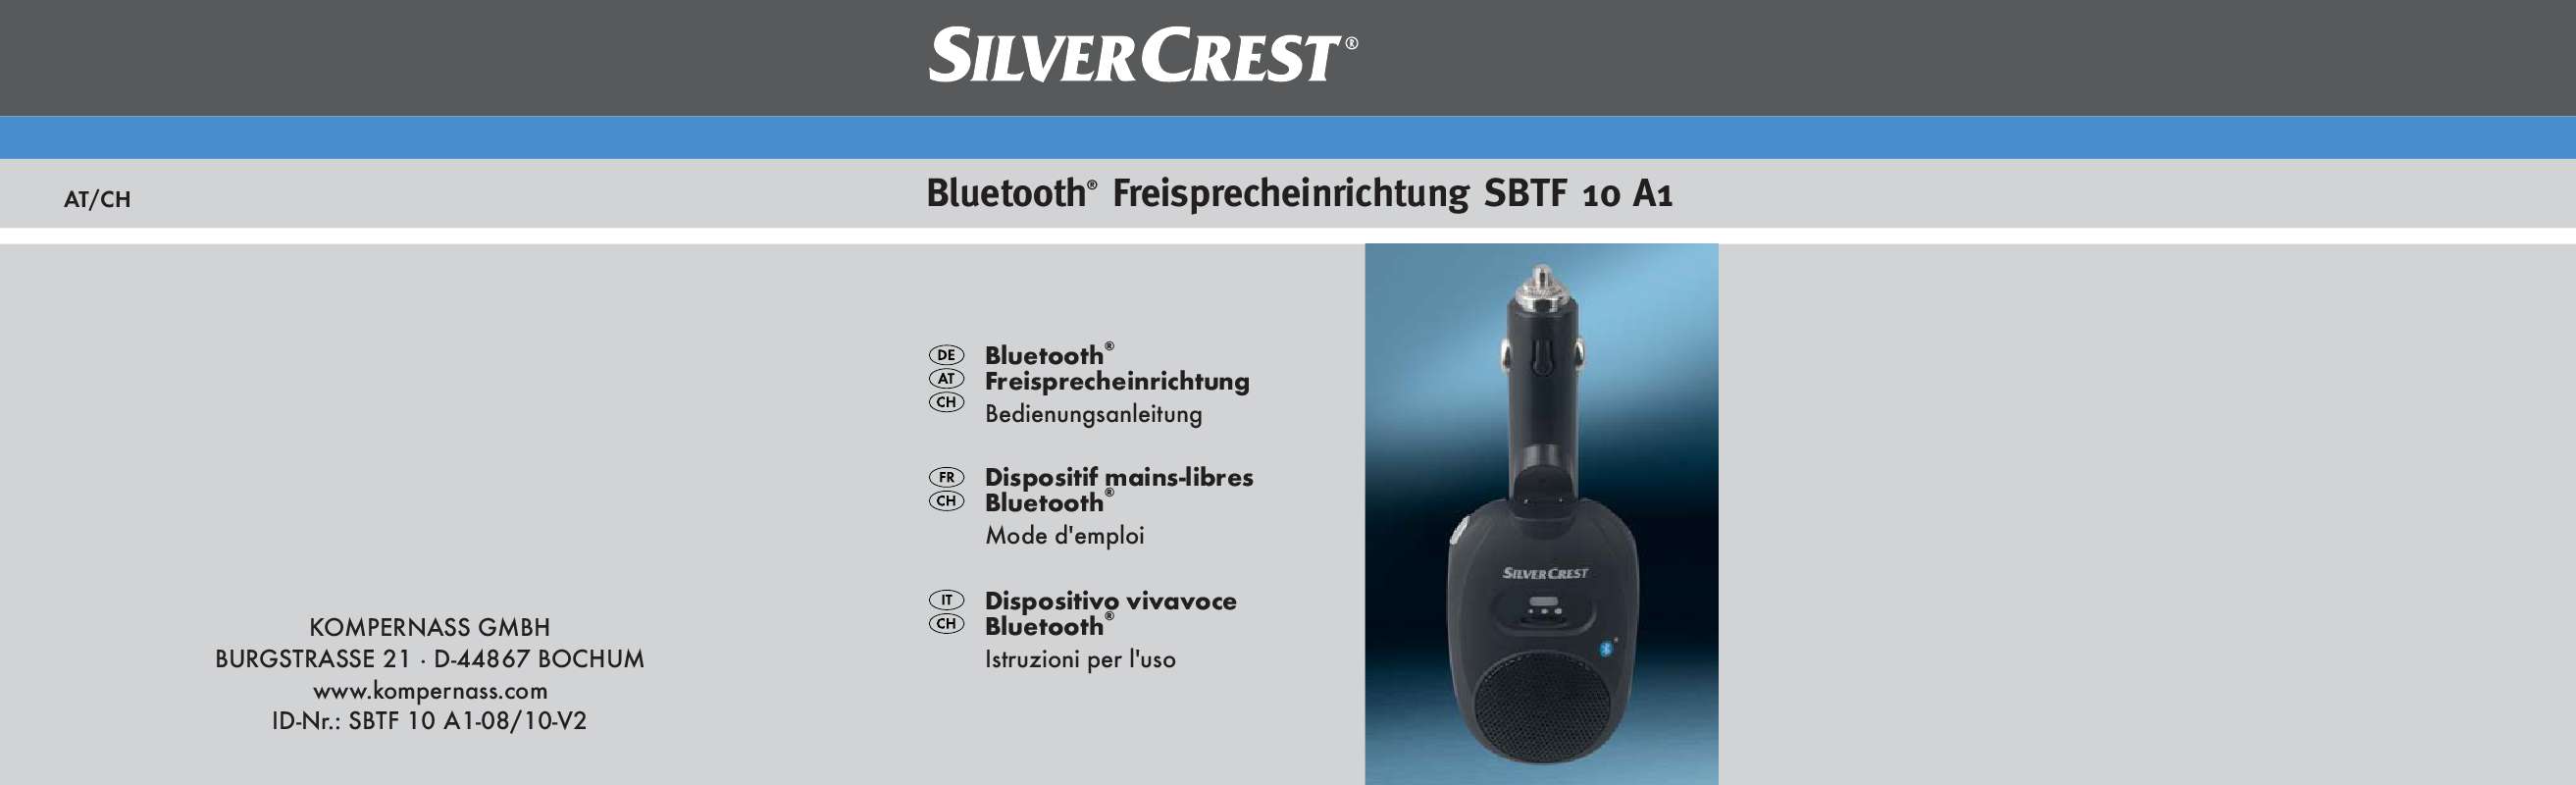 Guide utilisation  SILVERCREST SBTF 10 A1 BLUETOOTH HANDS-FREE KIT  de la marque SILVERCREST